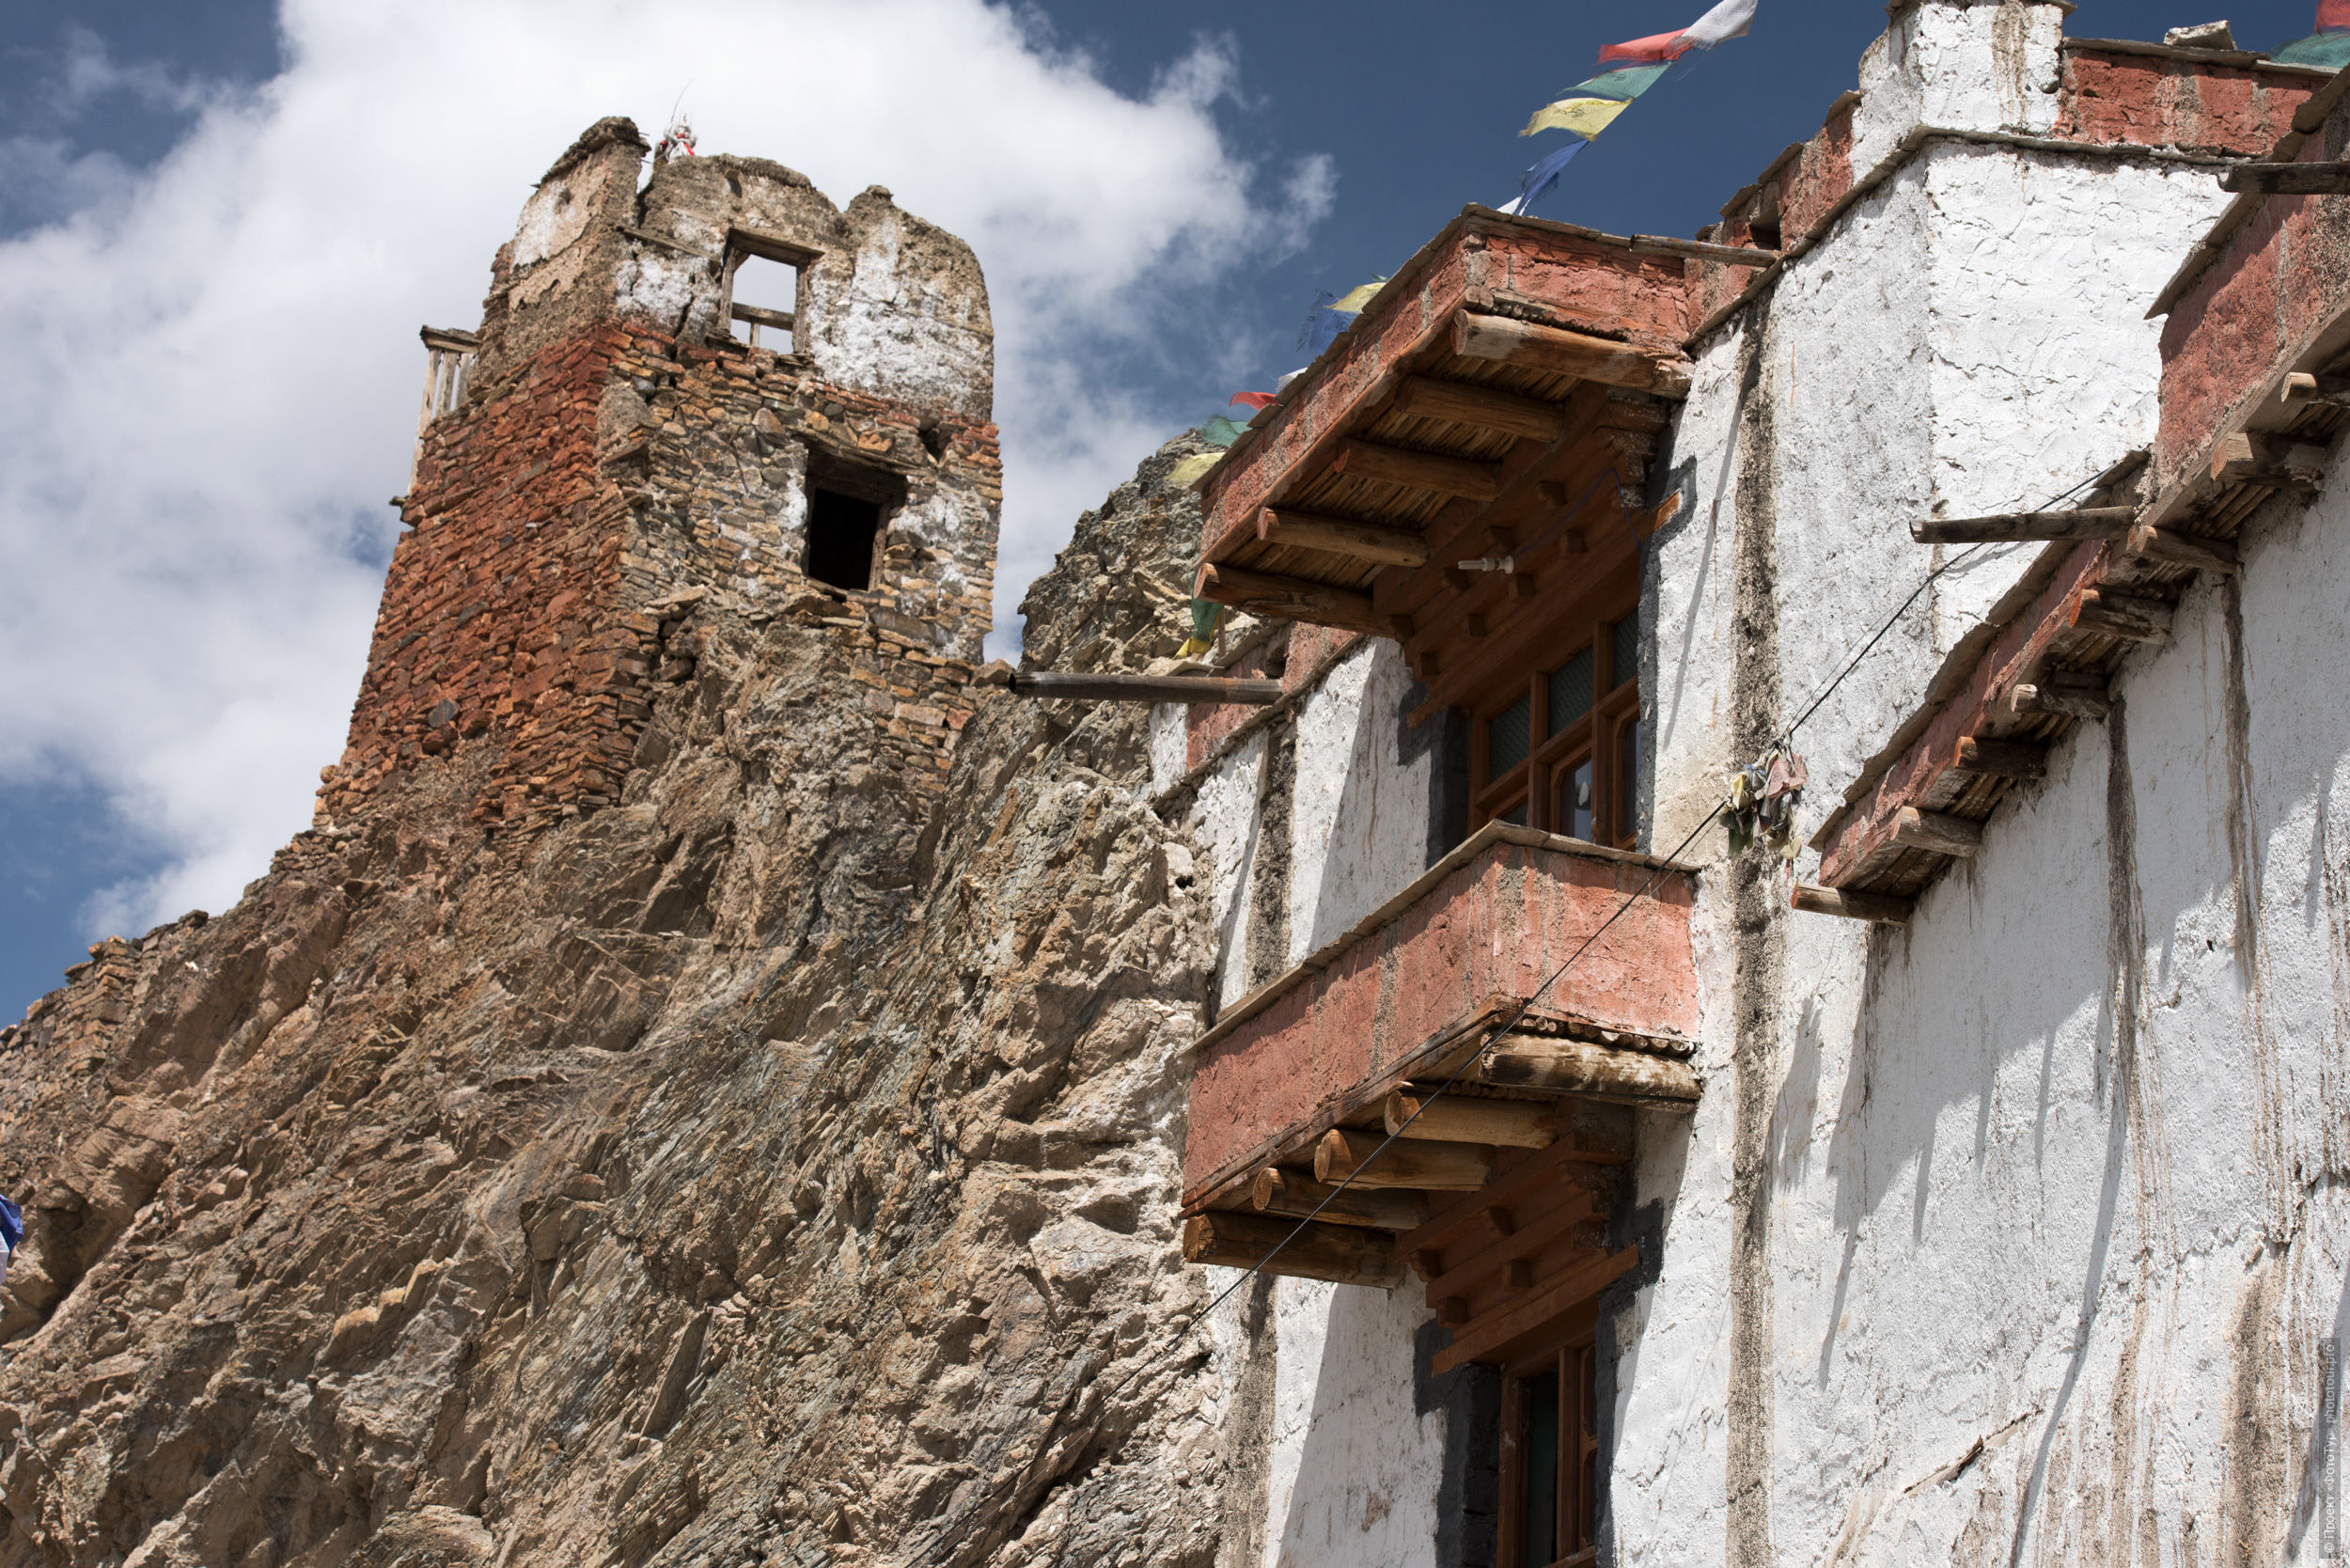 Остатки старой крепости над буддийским монастырем Ванла Гонпа, Ладакх, Северная Индия.